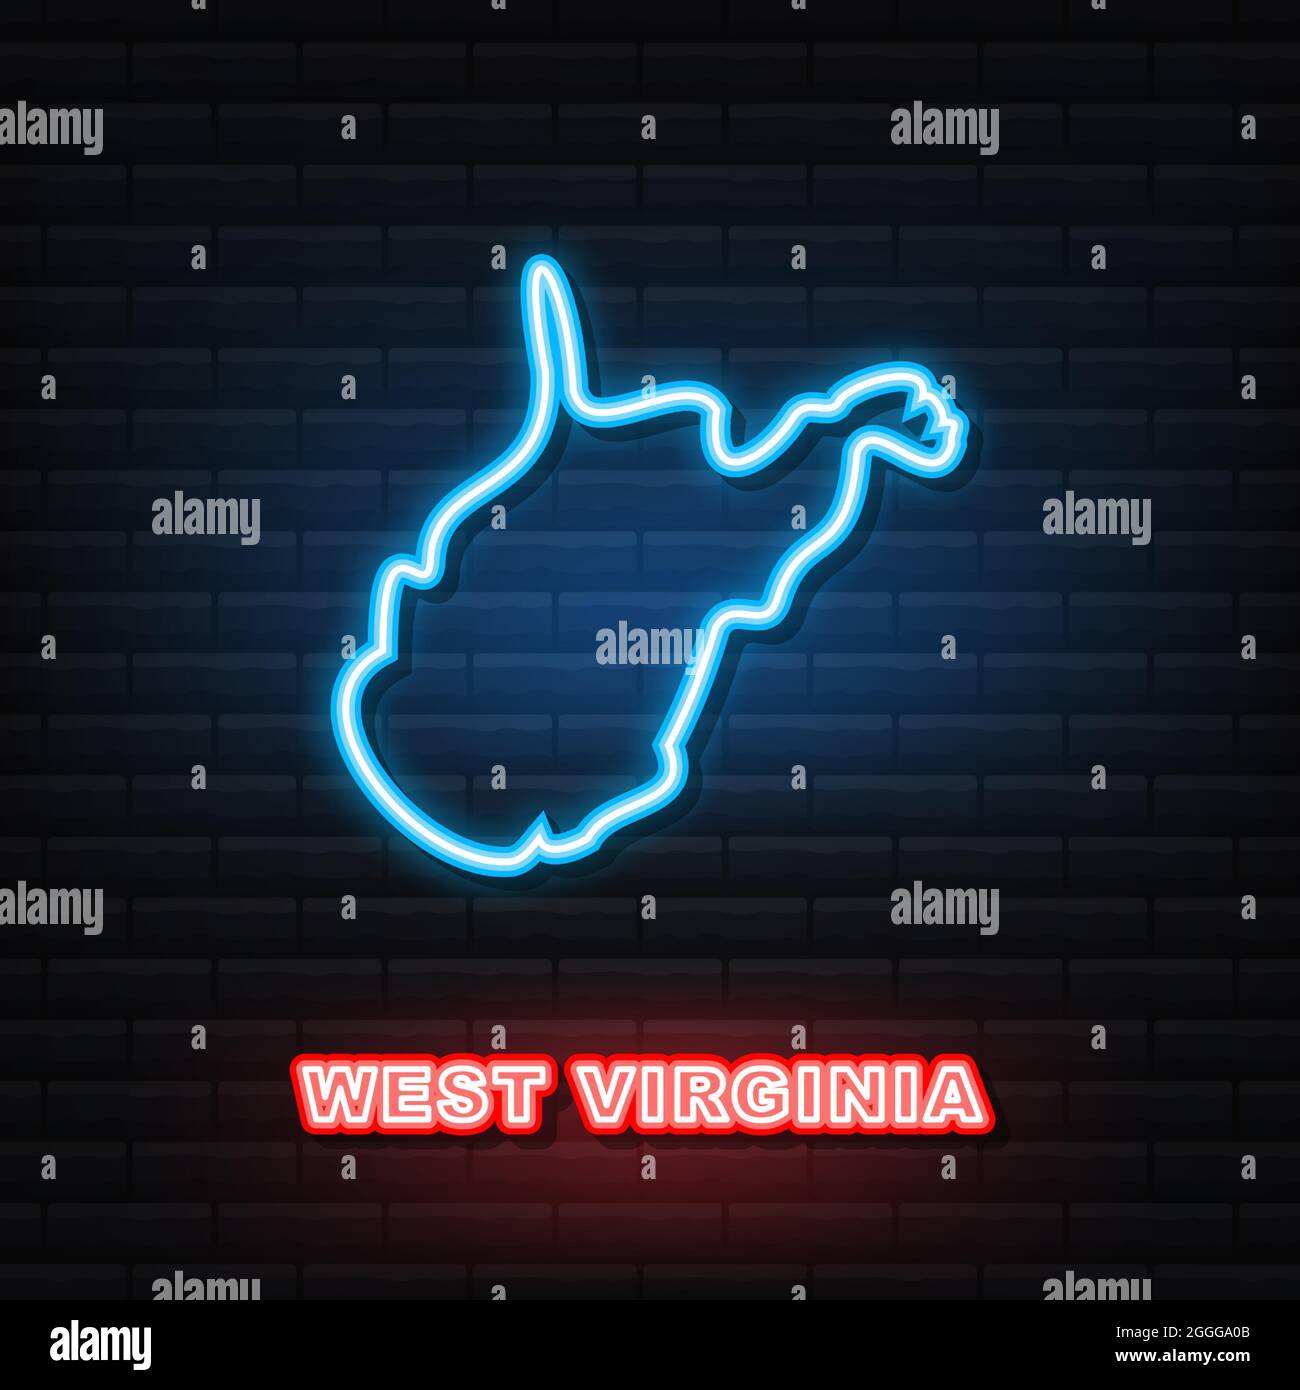 Mapa Del Estado De Virginia Occidental Icono De Ne N Ilustraci N Vectorial Imagen Vector De